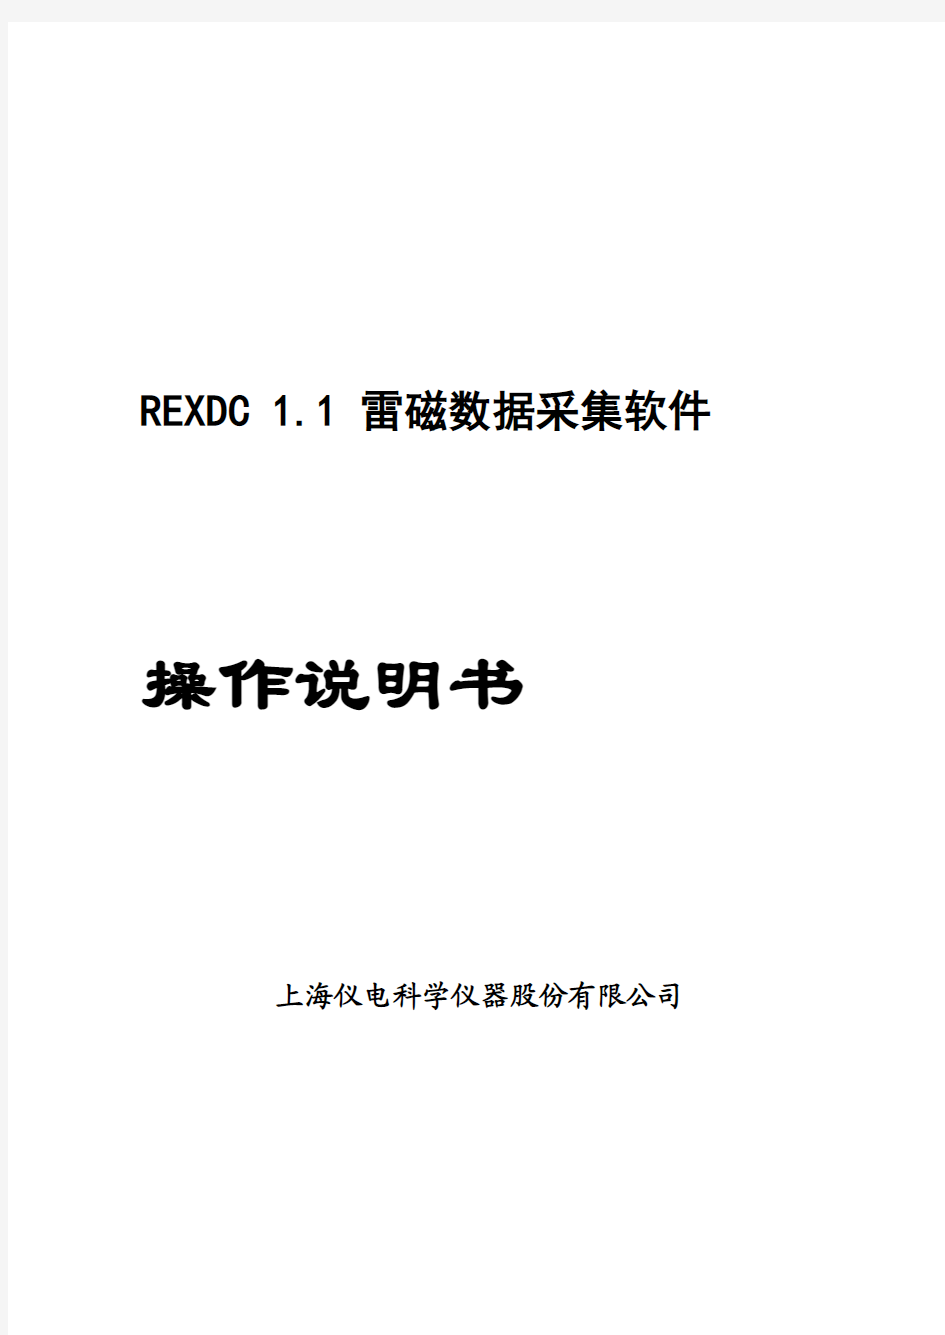 REXDC1.1雷磁数据采集软件操作说明书(电导仪说明书)